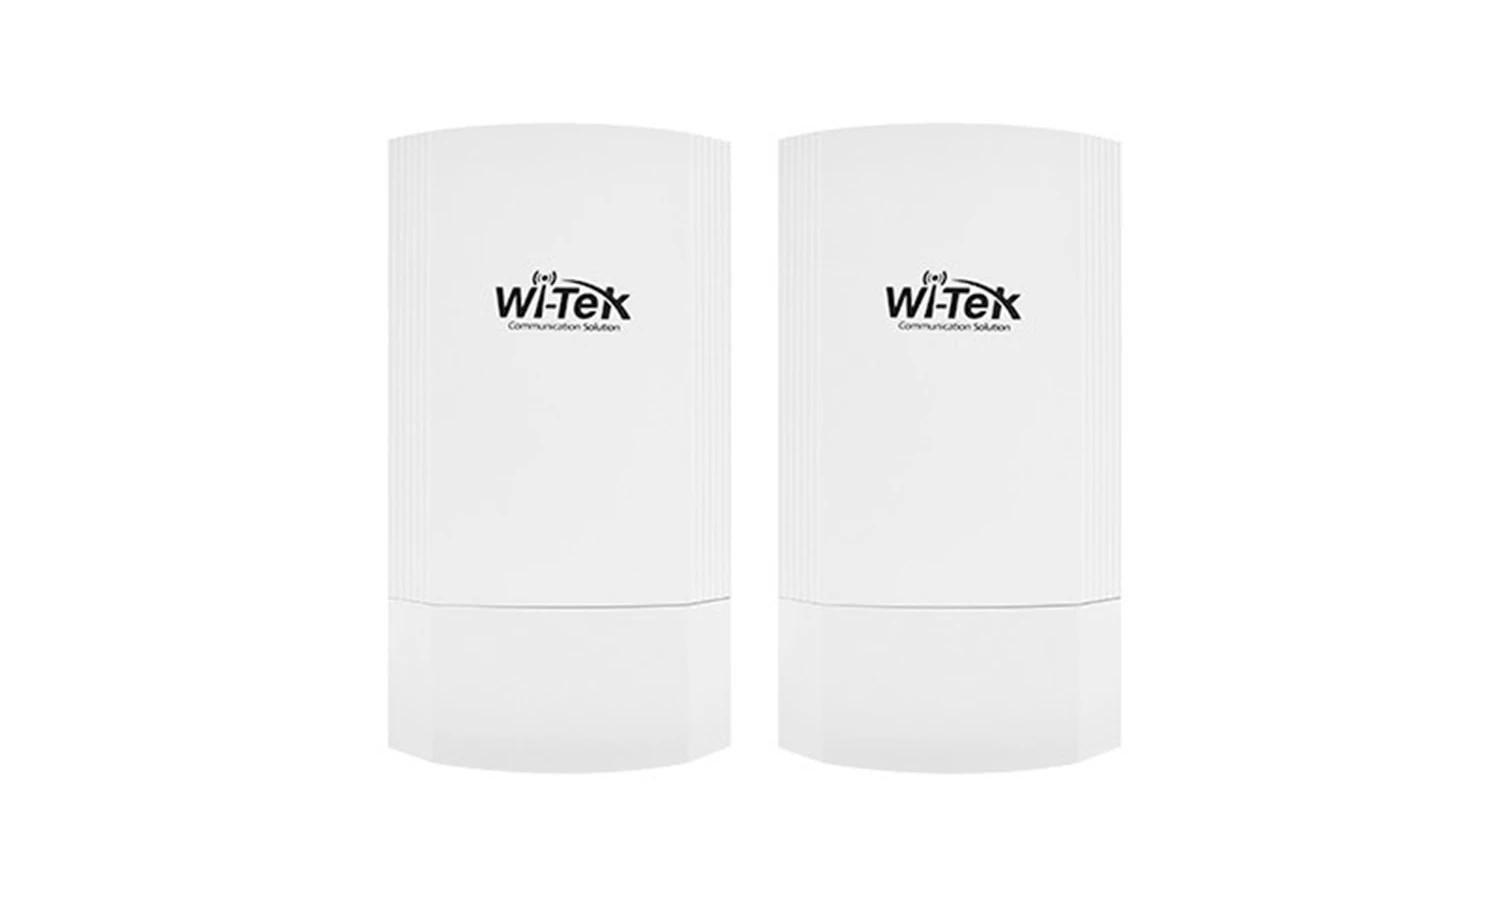 Wi-Tek Wi-Cpe511h-Kit 5.8G 3 Km 900m Wireless Access Point